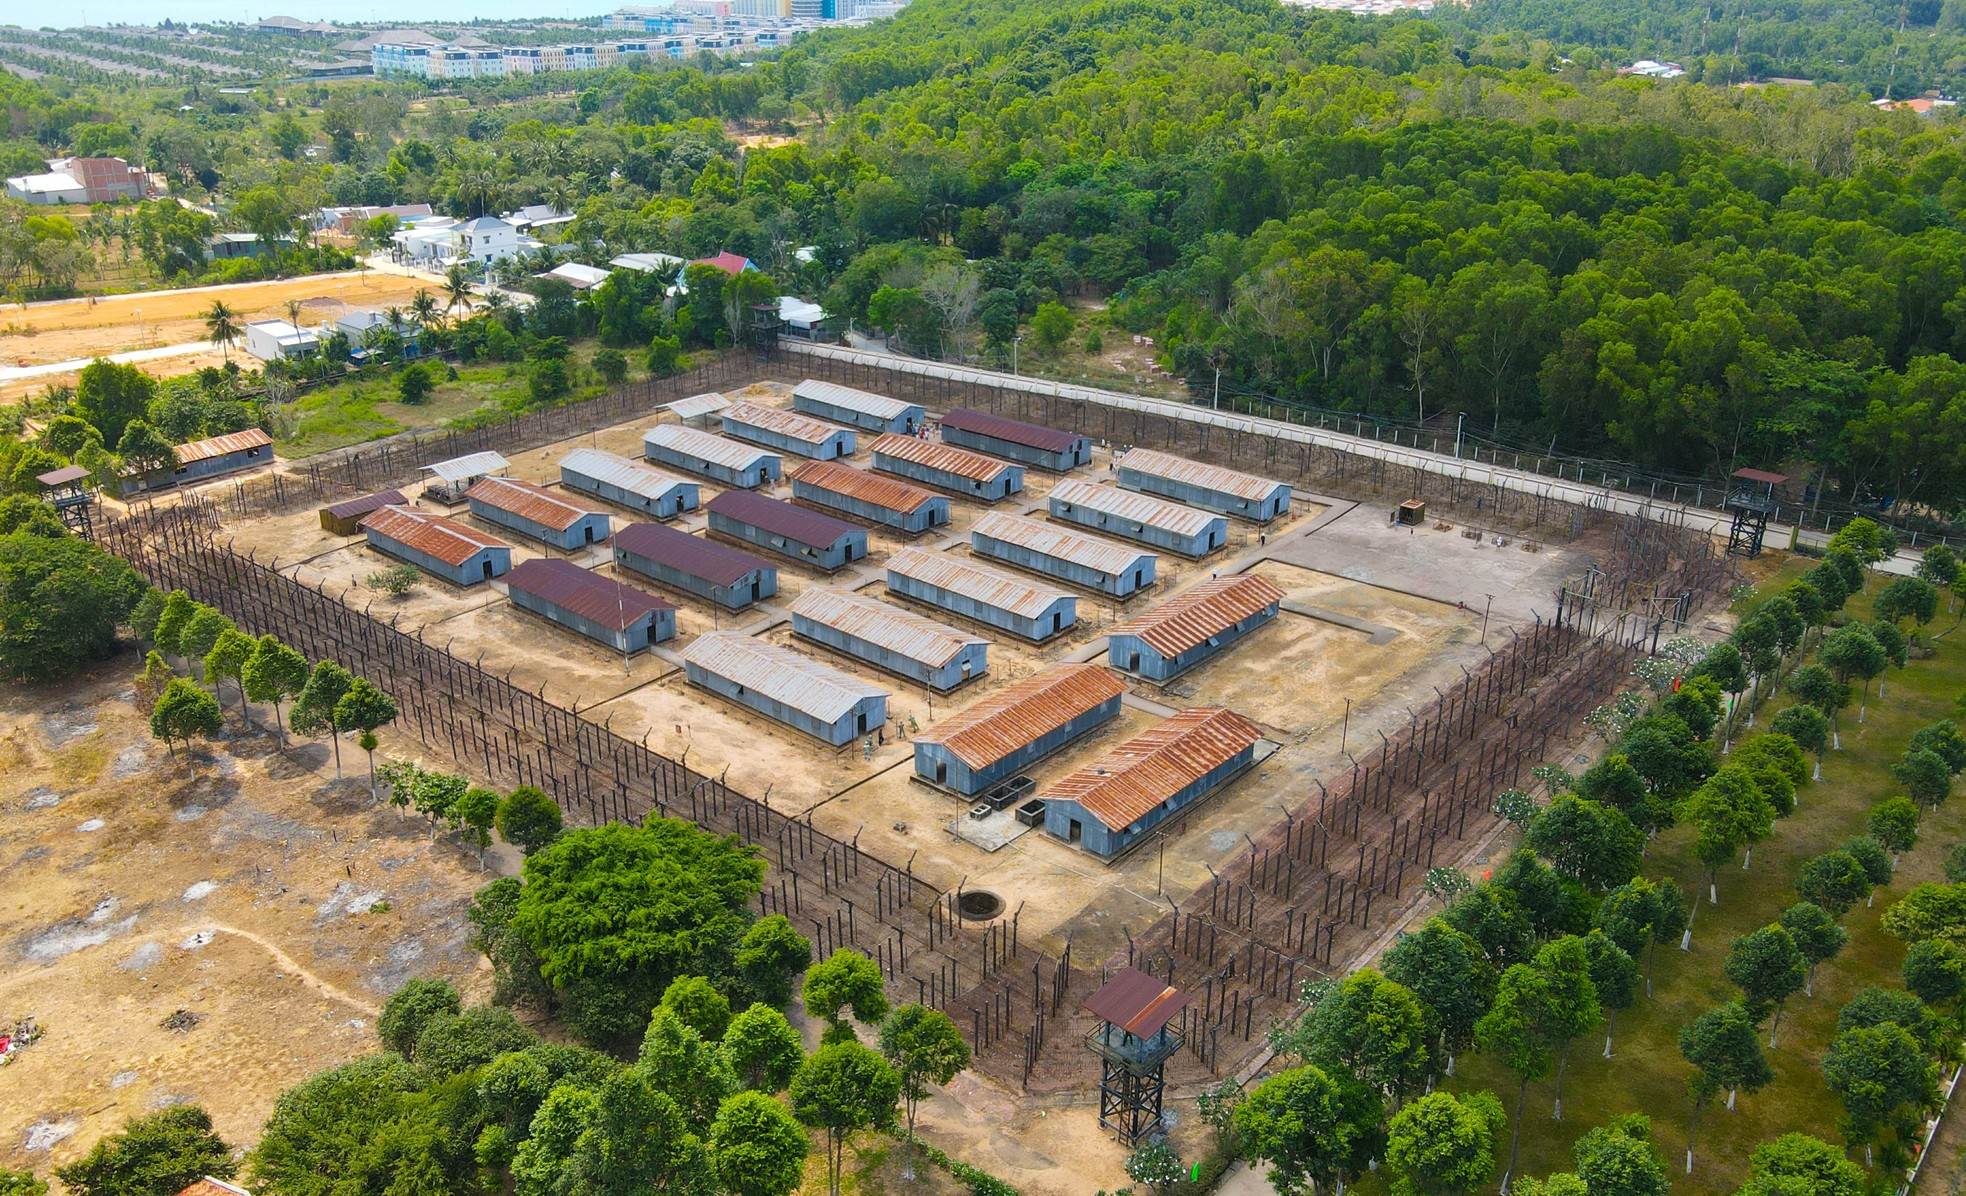 Nằm trên địa bàn phường An Thới, Trại giam tù binh Cộng sản Việt Nam - Phú Quốc được xây dựng trên diện tích 400ha, với gần 500 ngôi nhà, chia thành 12 khu (mỗi khu có 2 phân khu) và 10 khu (mỗi khu có 4 phân khu gọi tên theo thứ tự A, B, C, D). Mỗi khu trại có thể chứa khoảng 3.000 tù nhân.